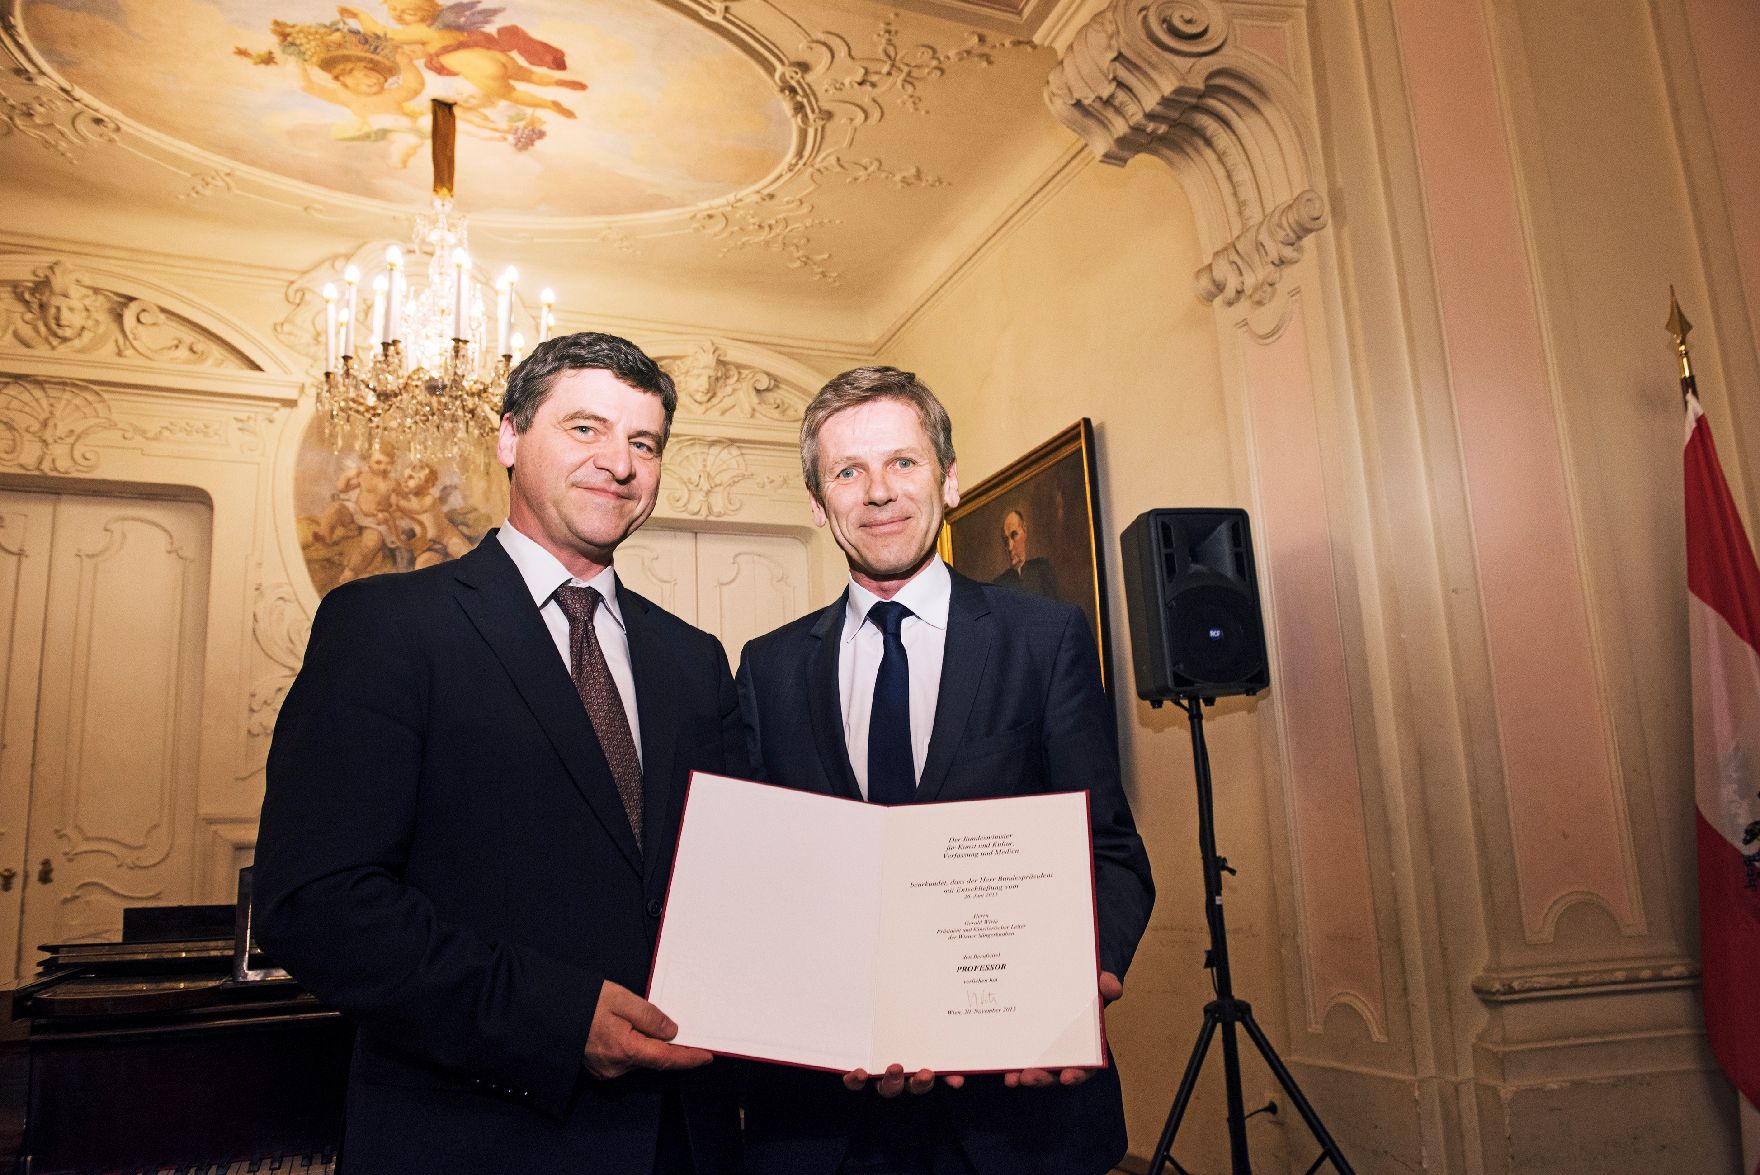 Am 20. November 2015 überreichte Kunst- und Kulturminister Josef Ostermayer (r.) die Urkunde mit der dem Präsidenten der Wiener Sängerknaben Gerald Wirth (l.) der Berufstitel Professor verliehen wurde.